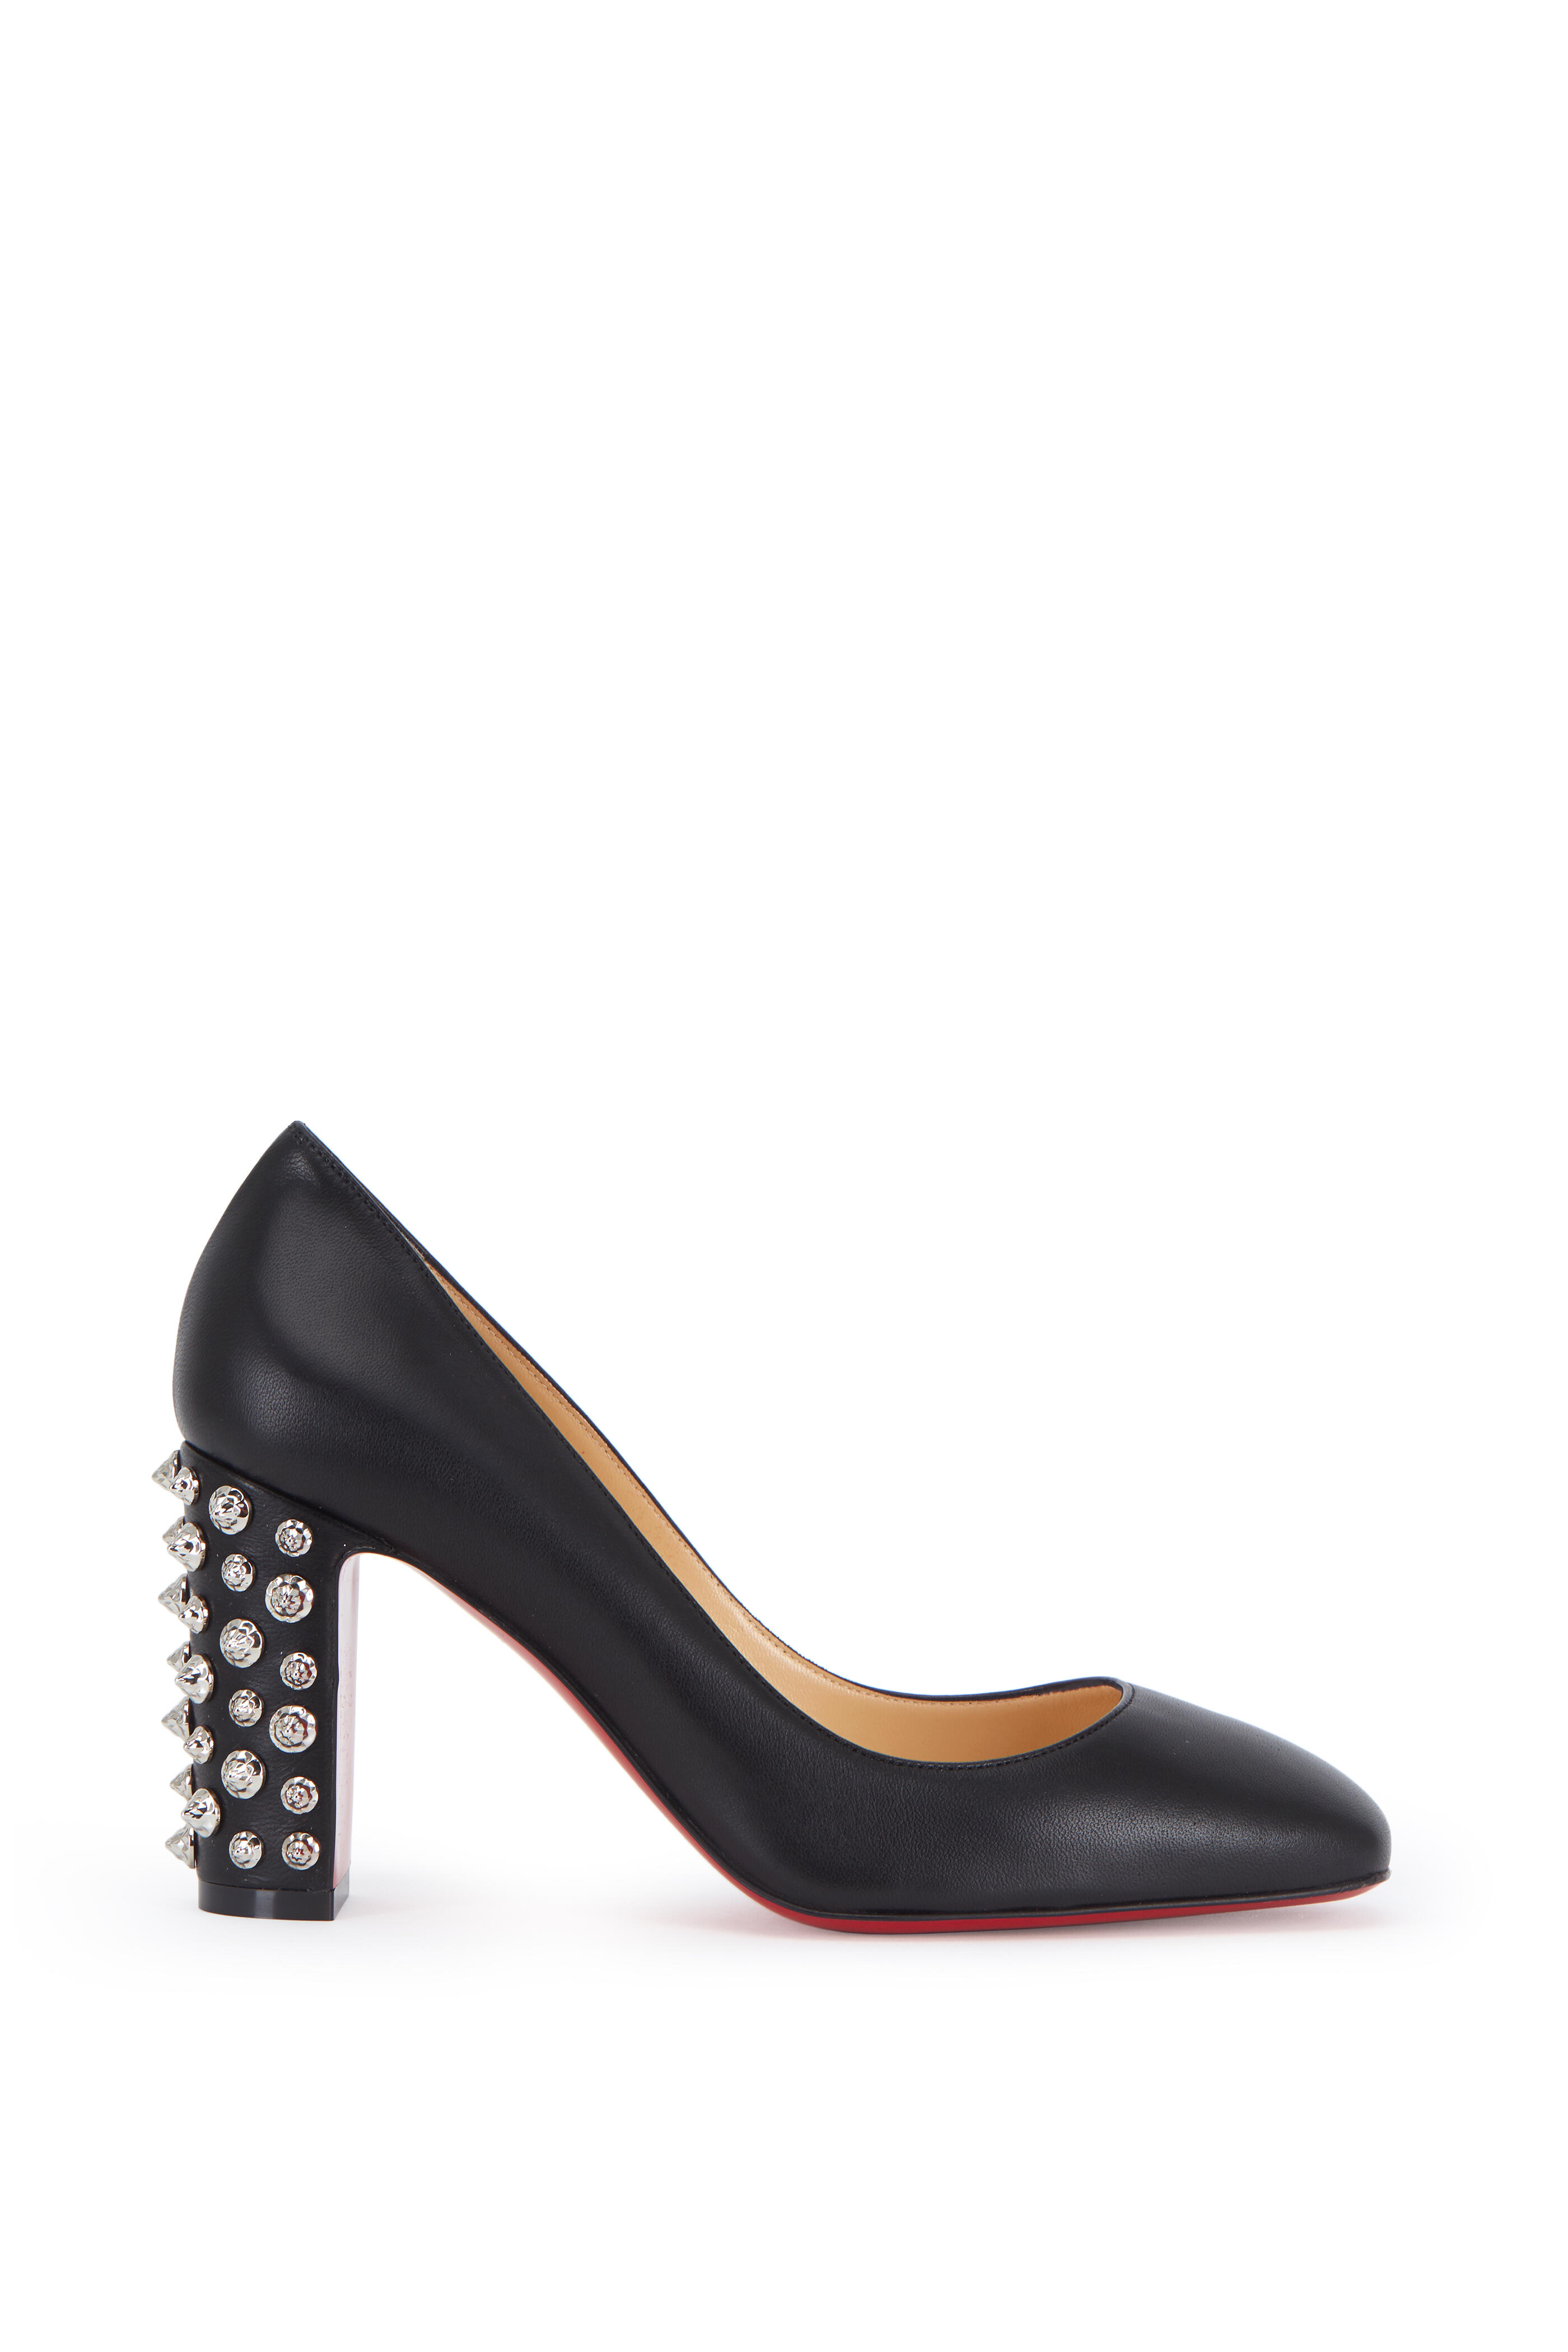 black studded leopard high heel red bottom pumps, black spiked